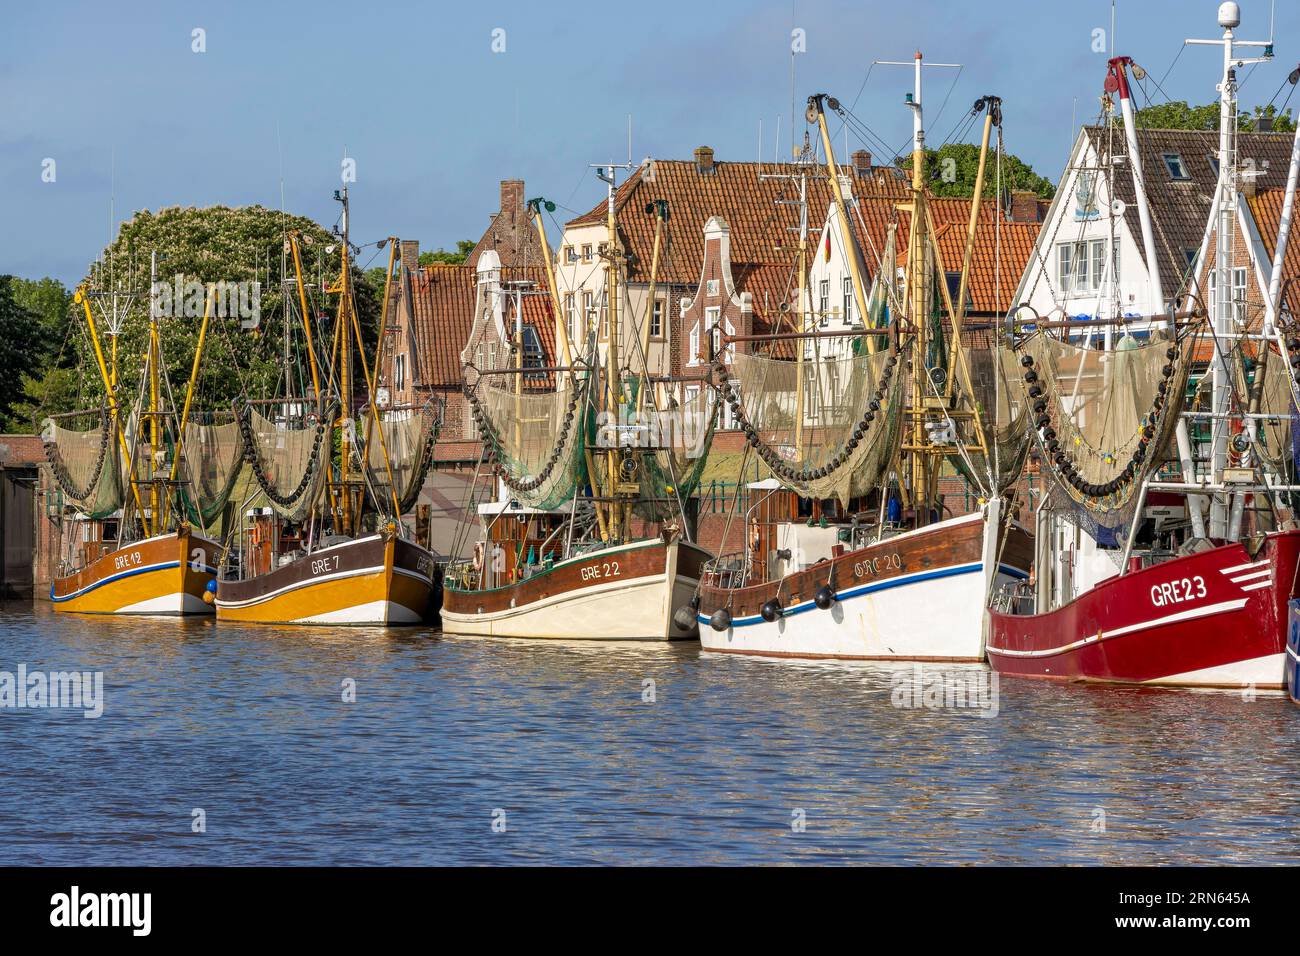 Cortador de cangrejo con red de cangrejo en el puerto de Greetsiel, Greetsiel, Frisia Oriental, Mar del Norte, Baja Sajonia, Alemania Foto de stock